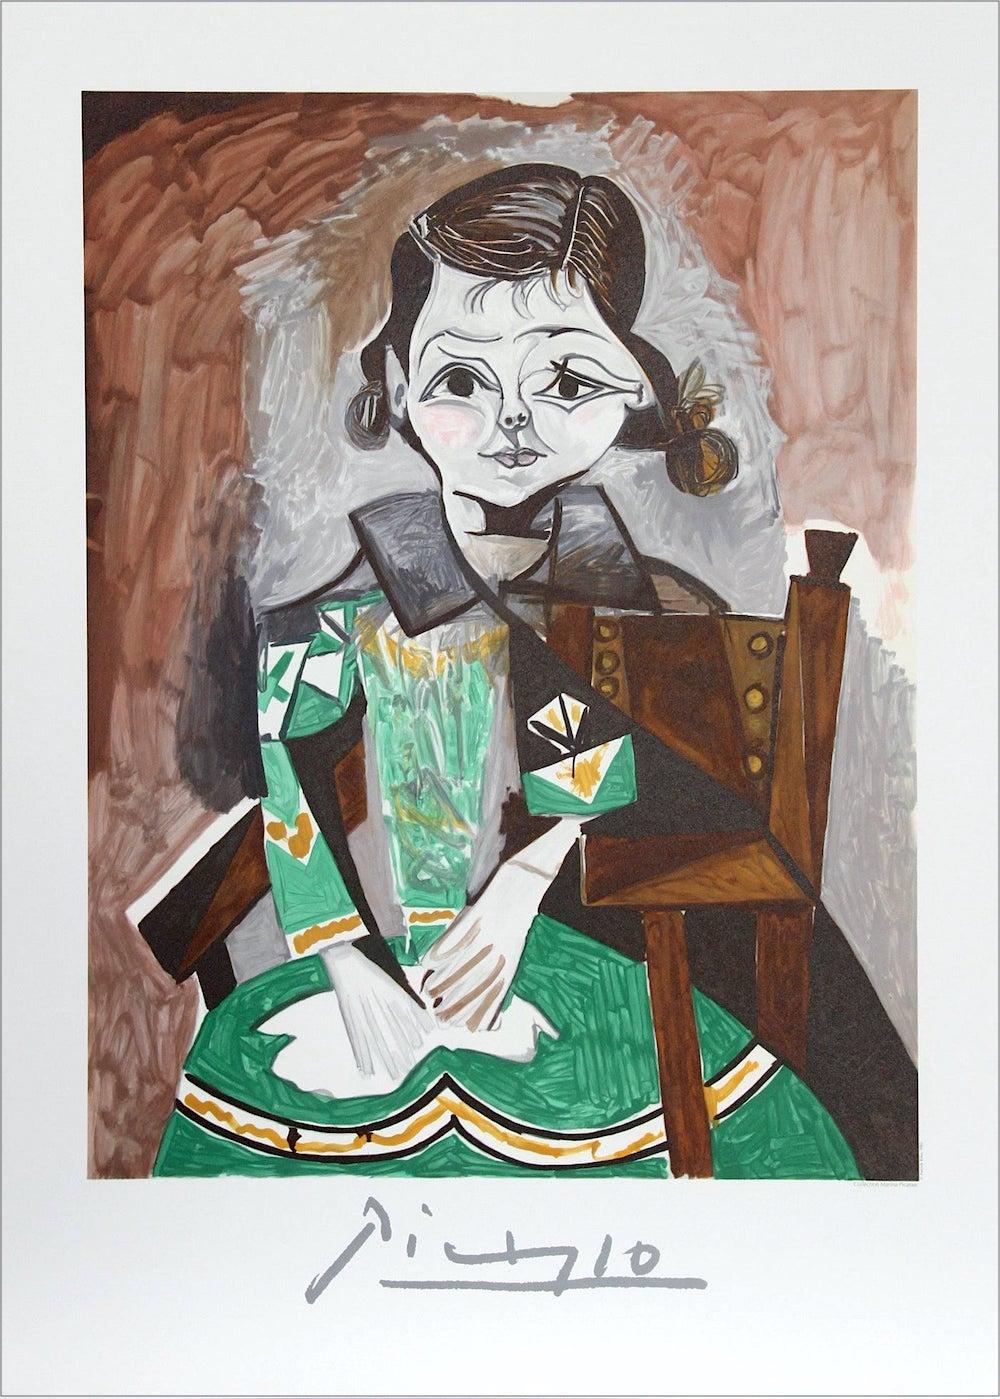 PETITE FILLE A LA ROBE VERTE (PalomaPicasso) Lithographie, Kleines Mädchenkleid (Grau), Interior Print, von (after) Pablo Picasso